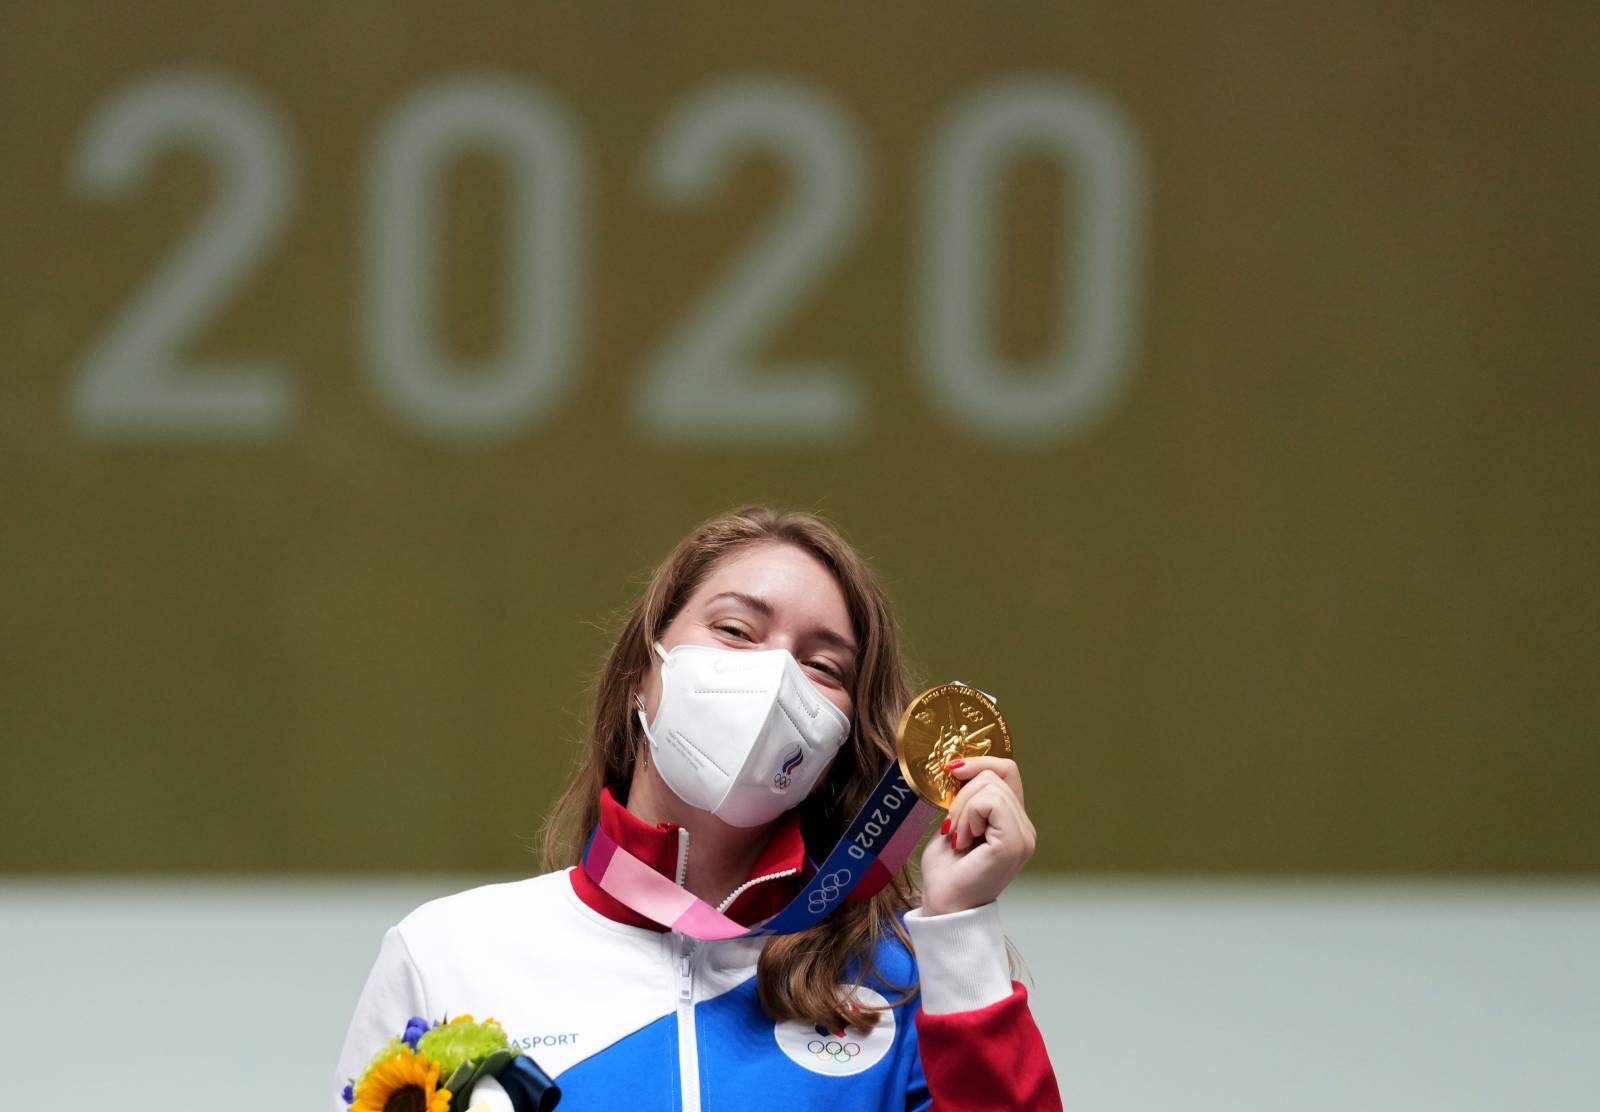 Россия может выиграть 5 медалей в пятый день Олимпиады 27 июля: Где их ждать